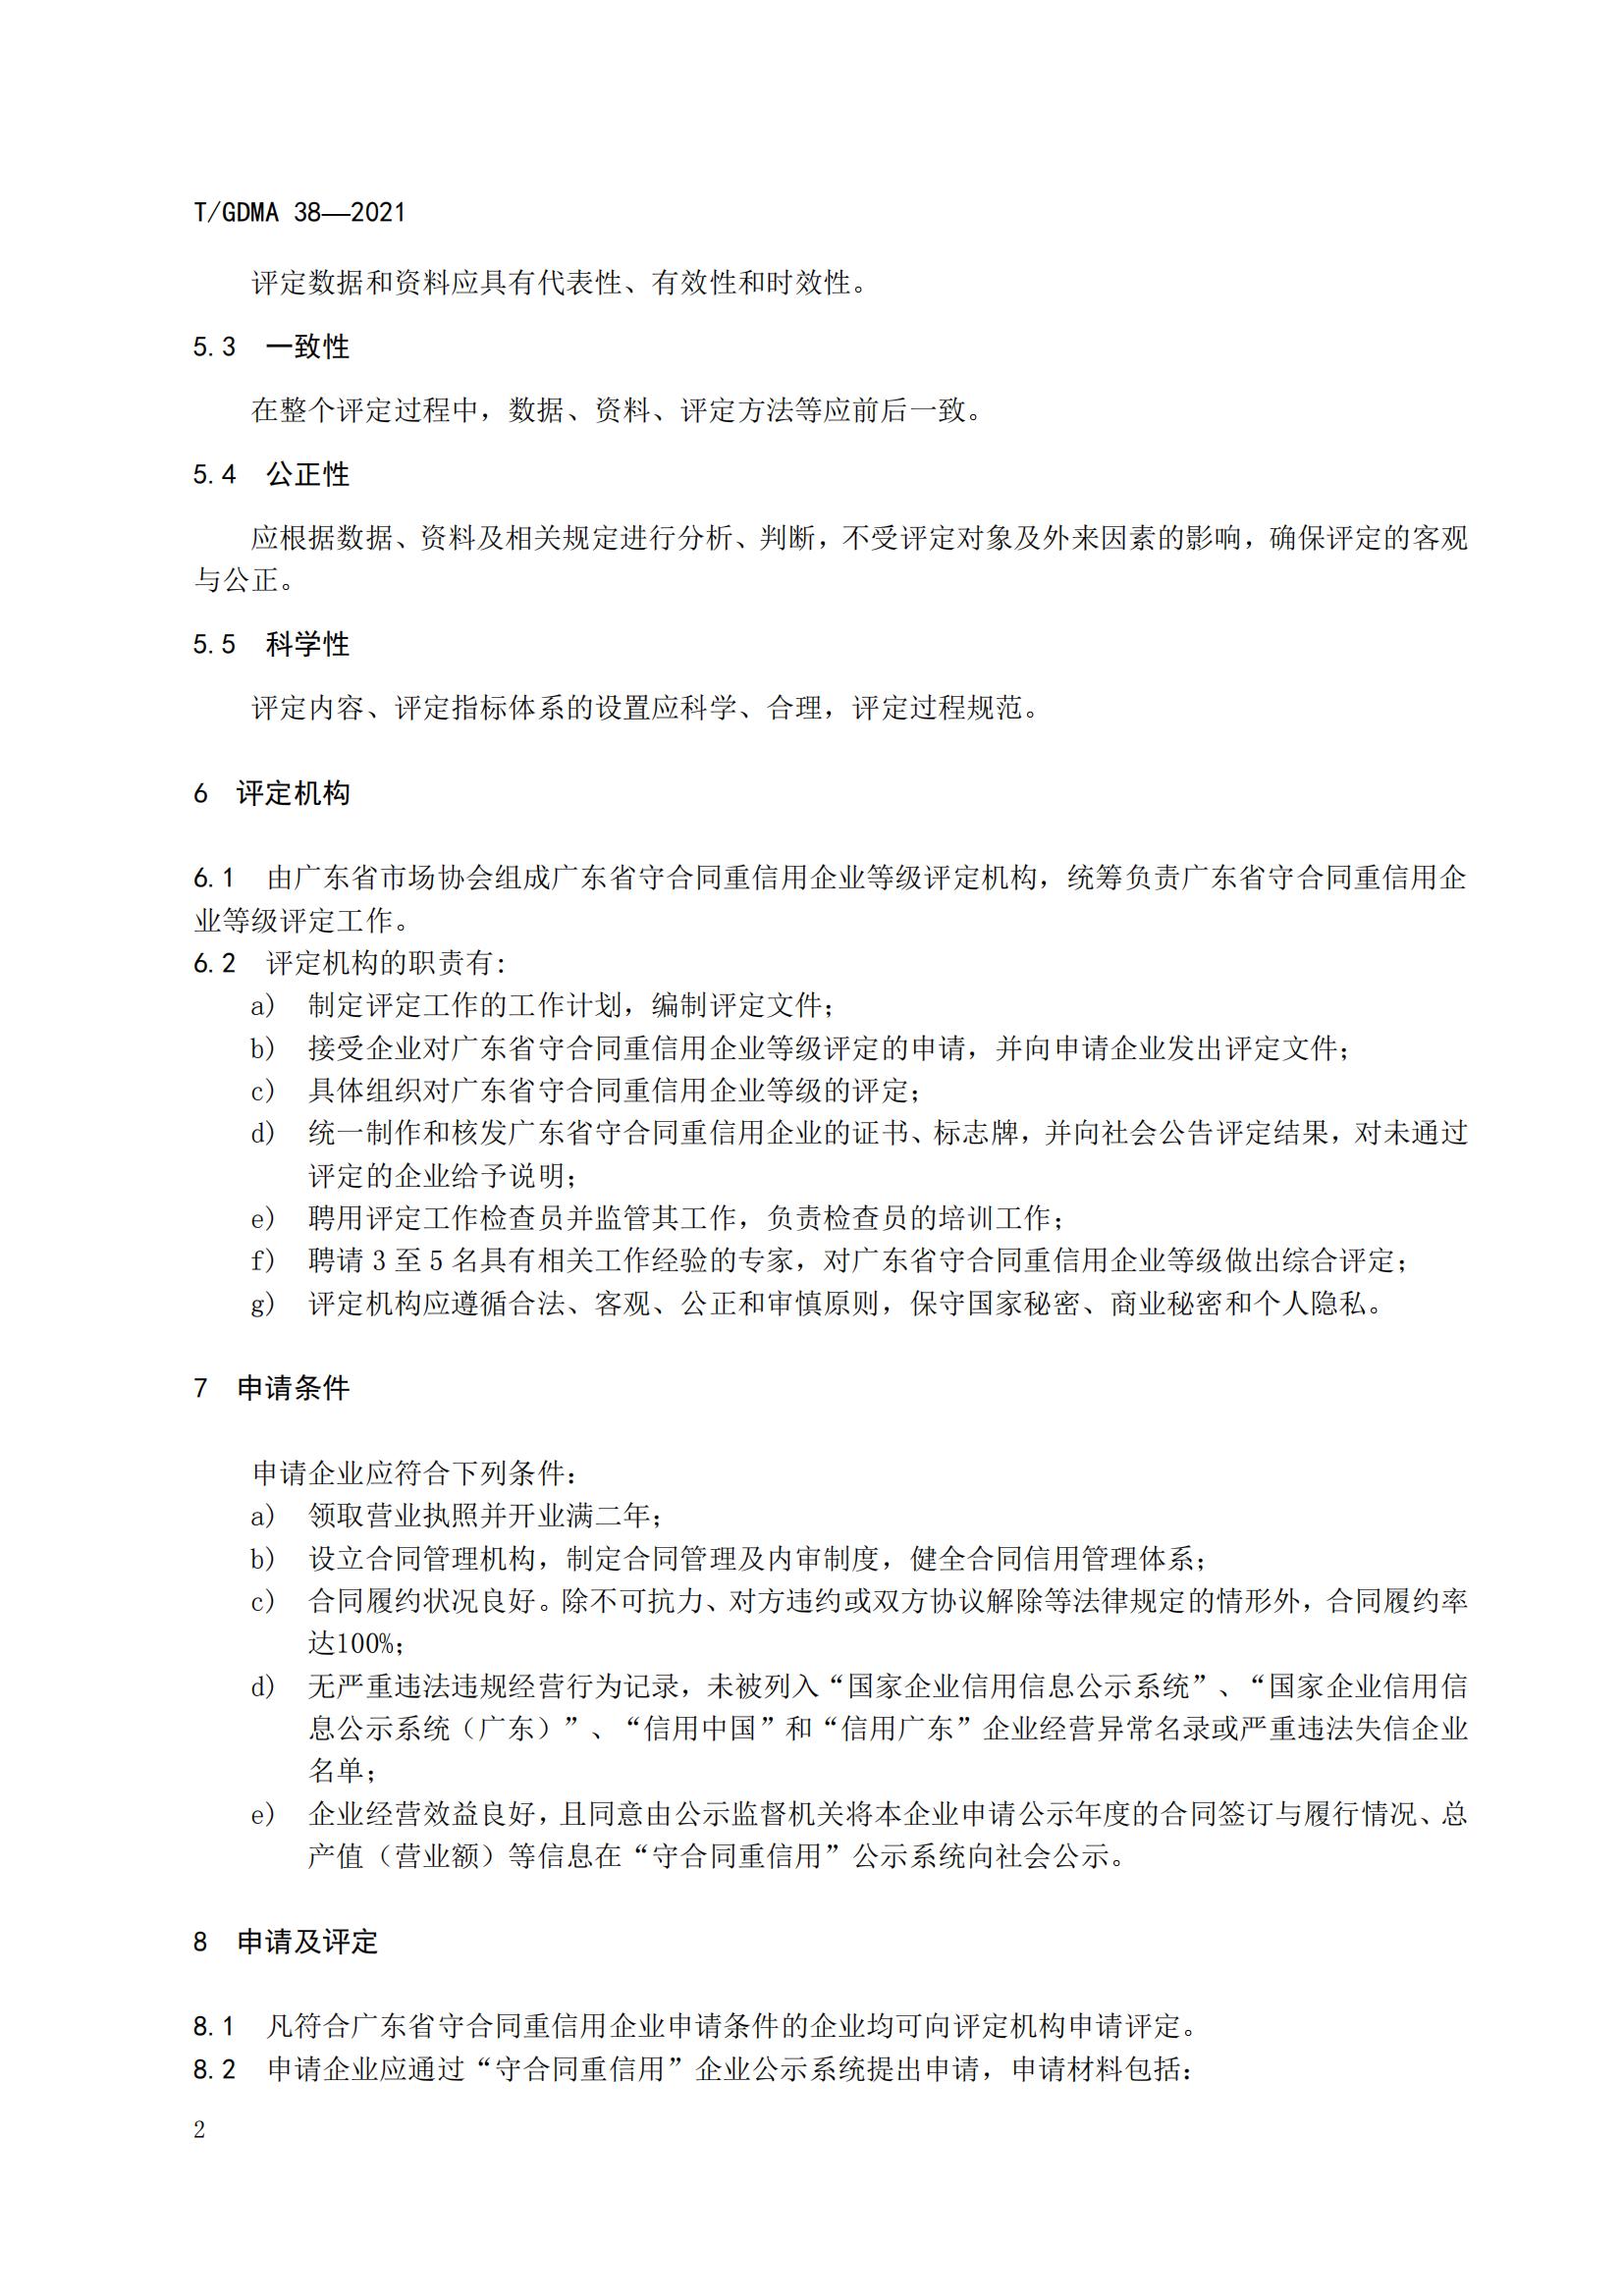 TGDMA 38 广东省守合同重信用企业等级评定规范-发布稿_05.jpg